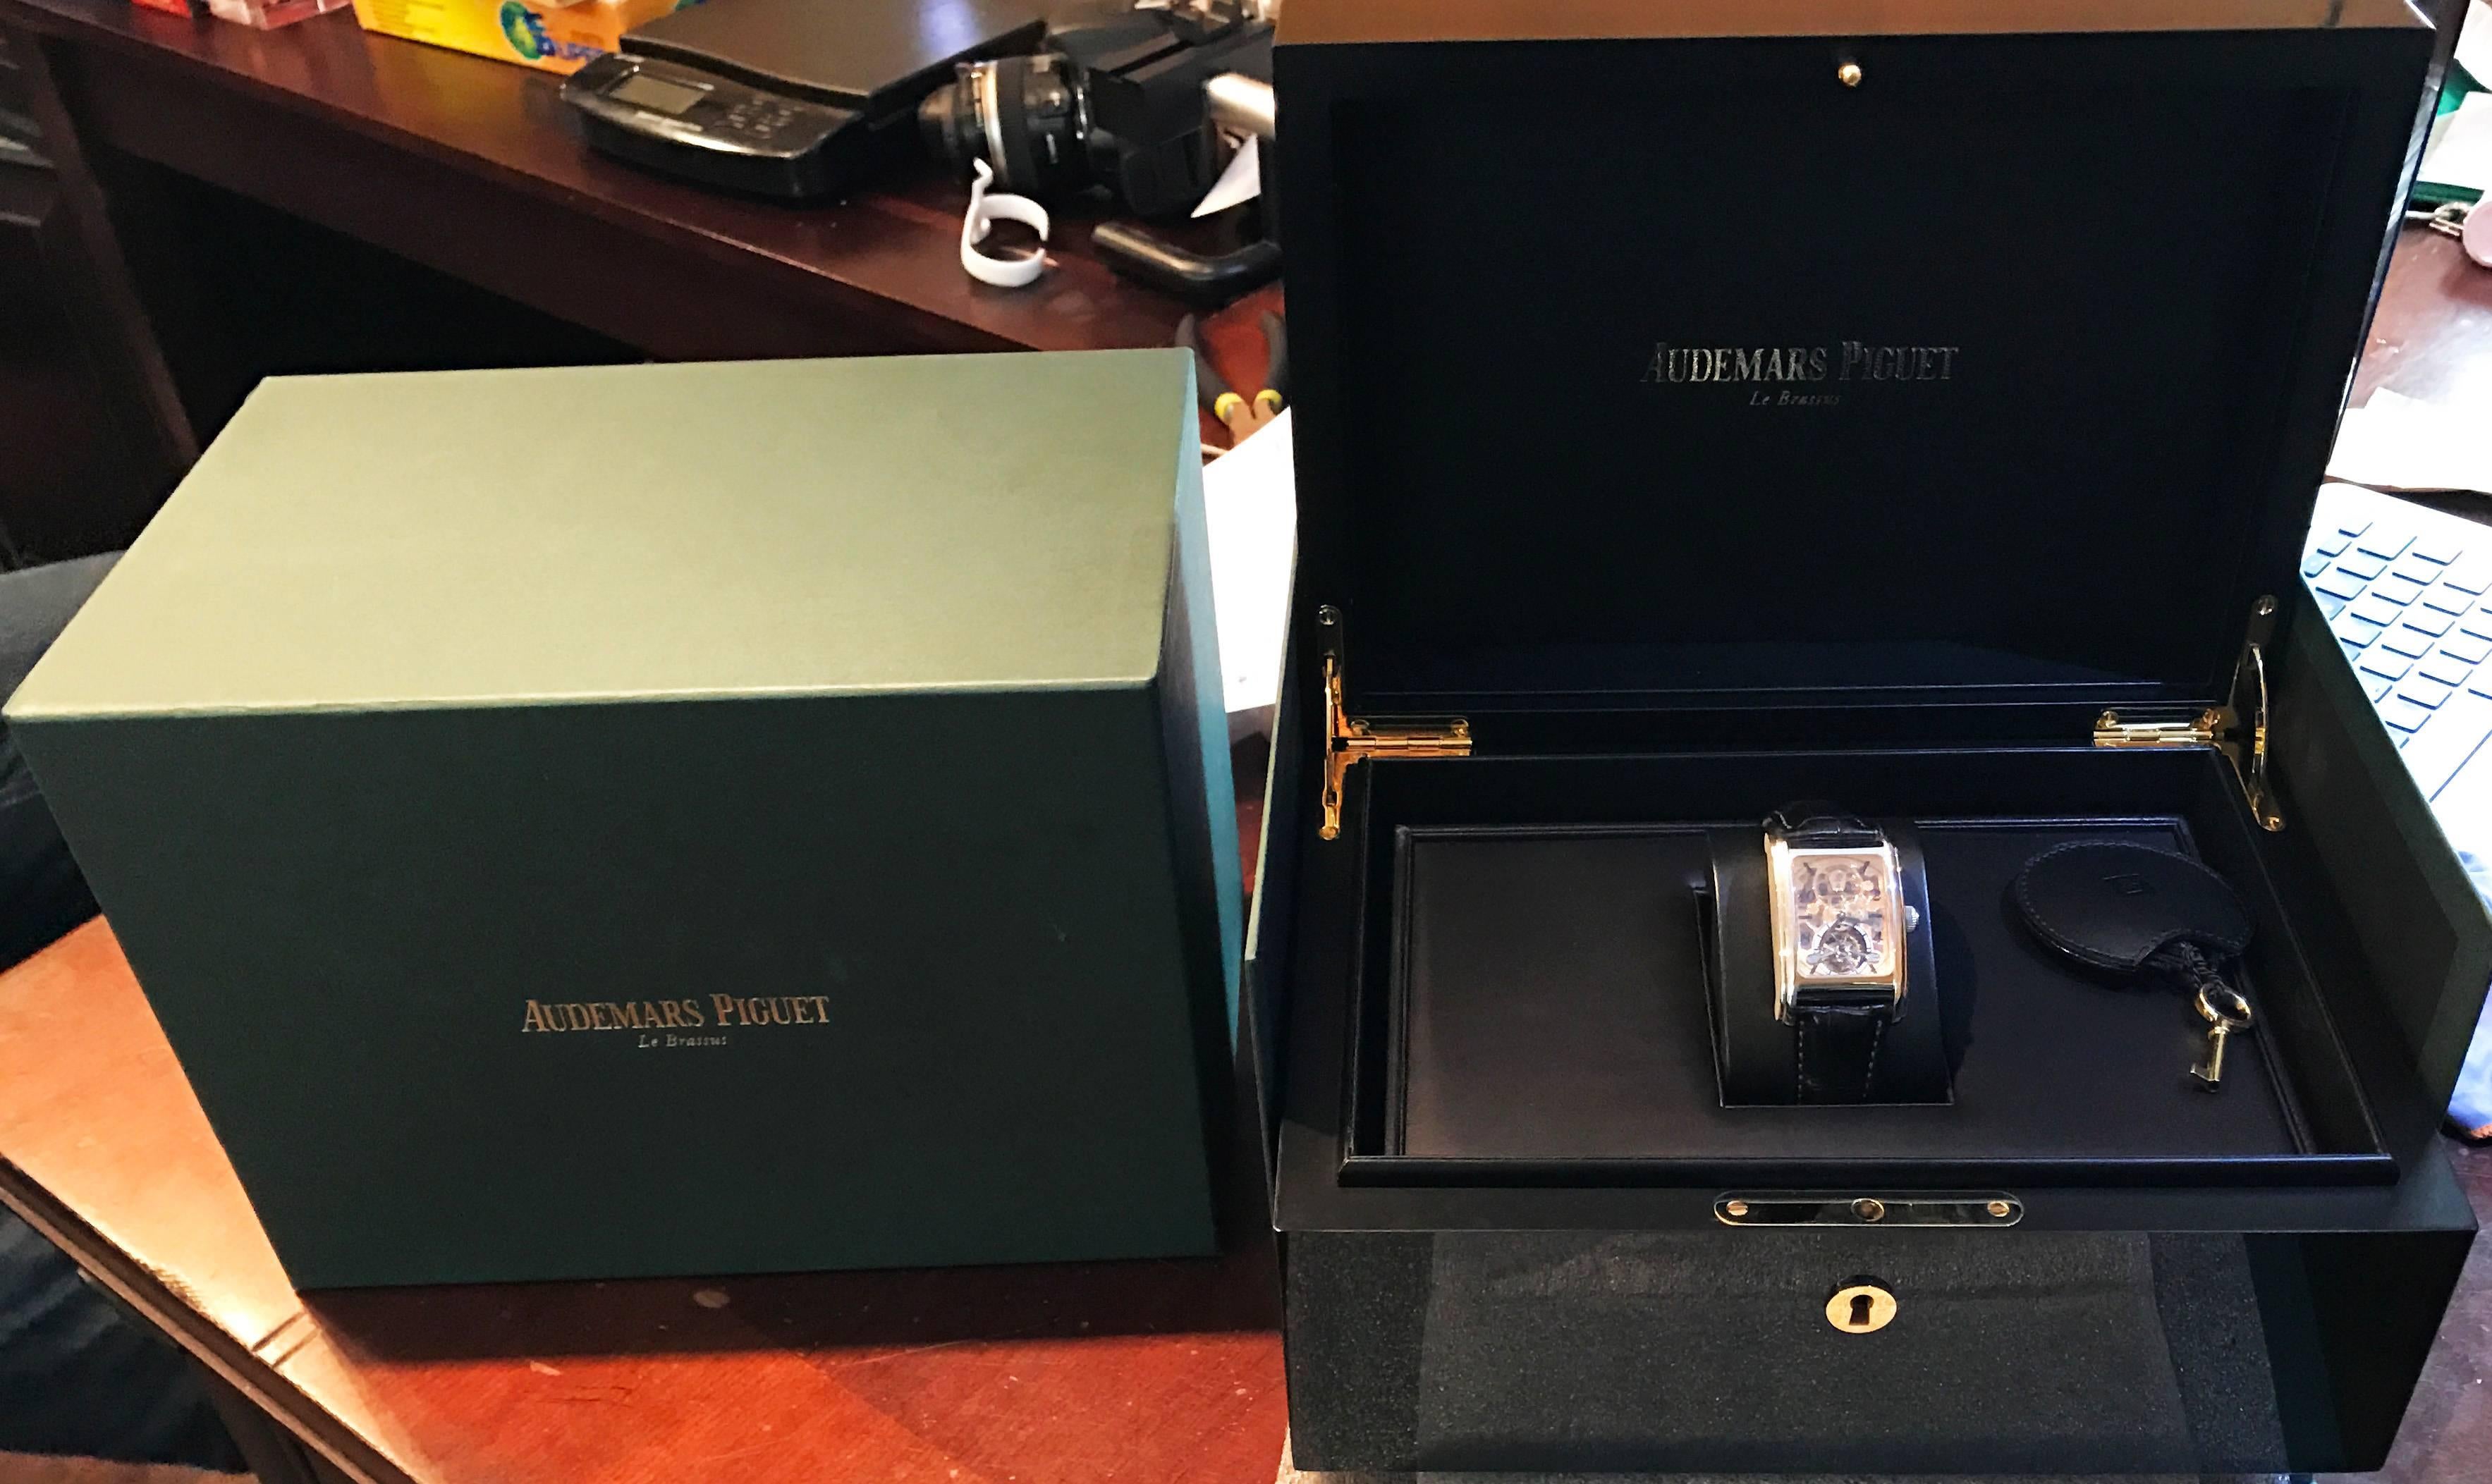  Audemars Piguet Edward Piguet Platinum Skeleton Dial Tourbillon Wristwatch  For Sale 3